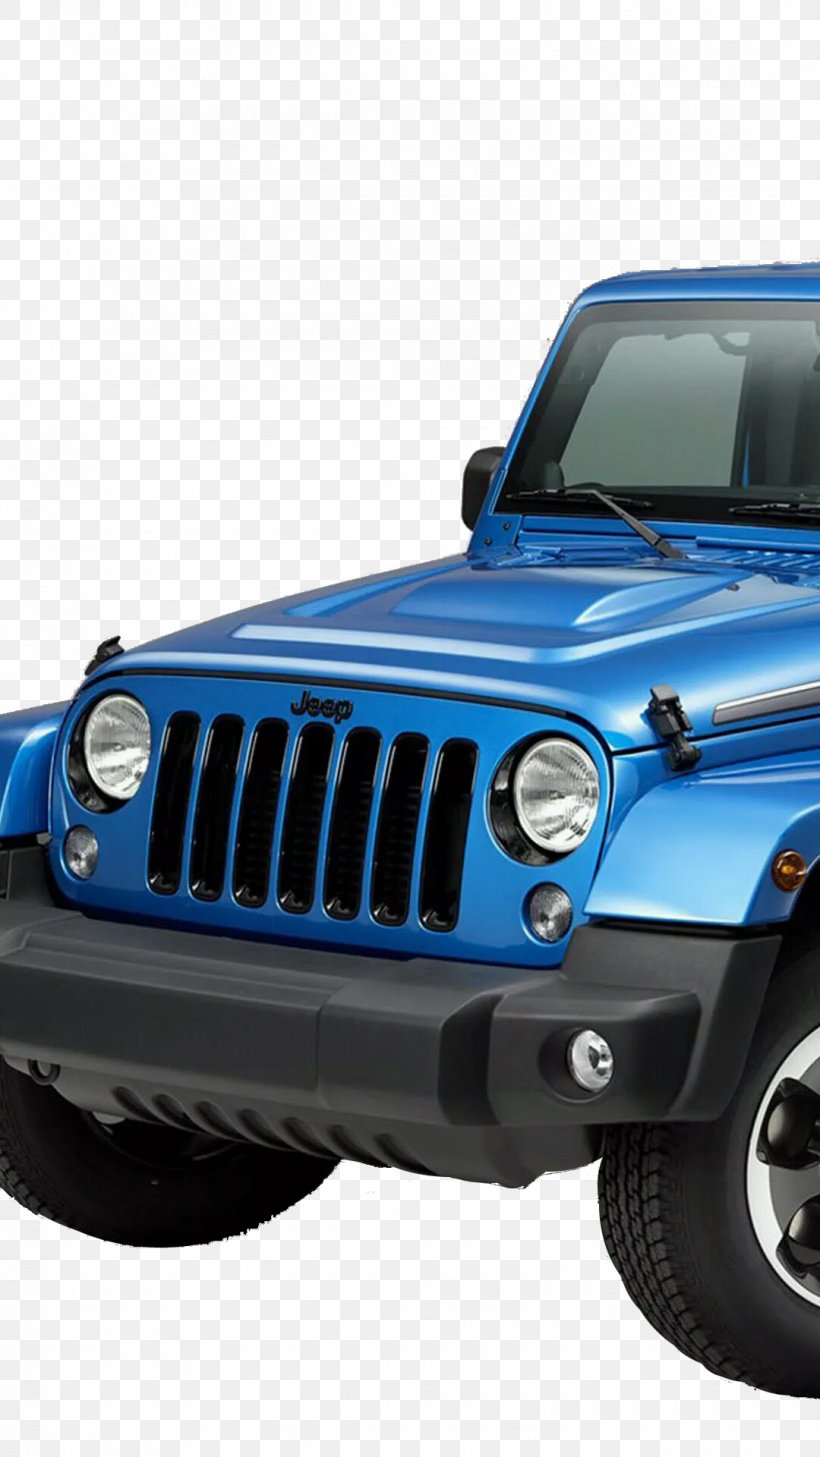 2015 Jeep Wrangler 2018 Jeep Wrangler 2014 Jeep Wrangler Car, PNG, 1080x1920px, 2014 Jeep Wrangler, 2015 Jeep Wrangler, 2018 Jeep Wrangler, Auto Part, Automotive Design Download Free